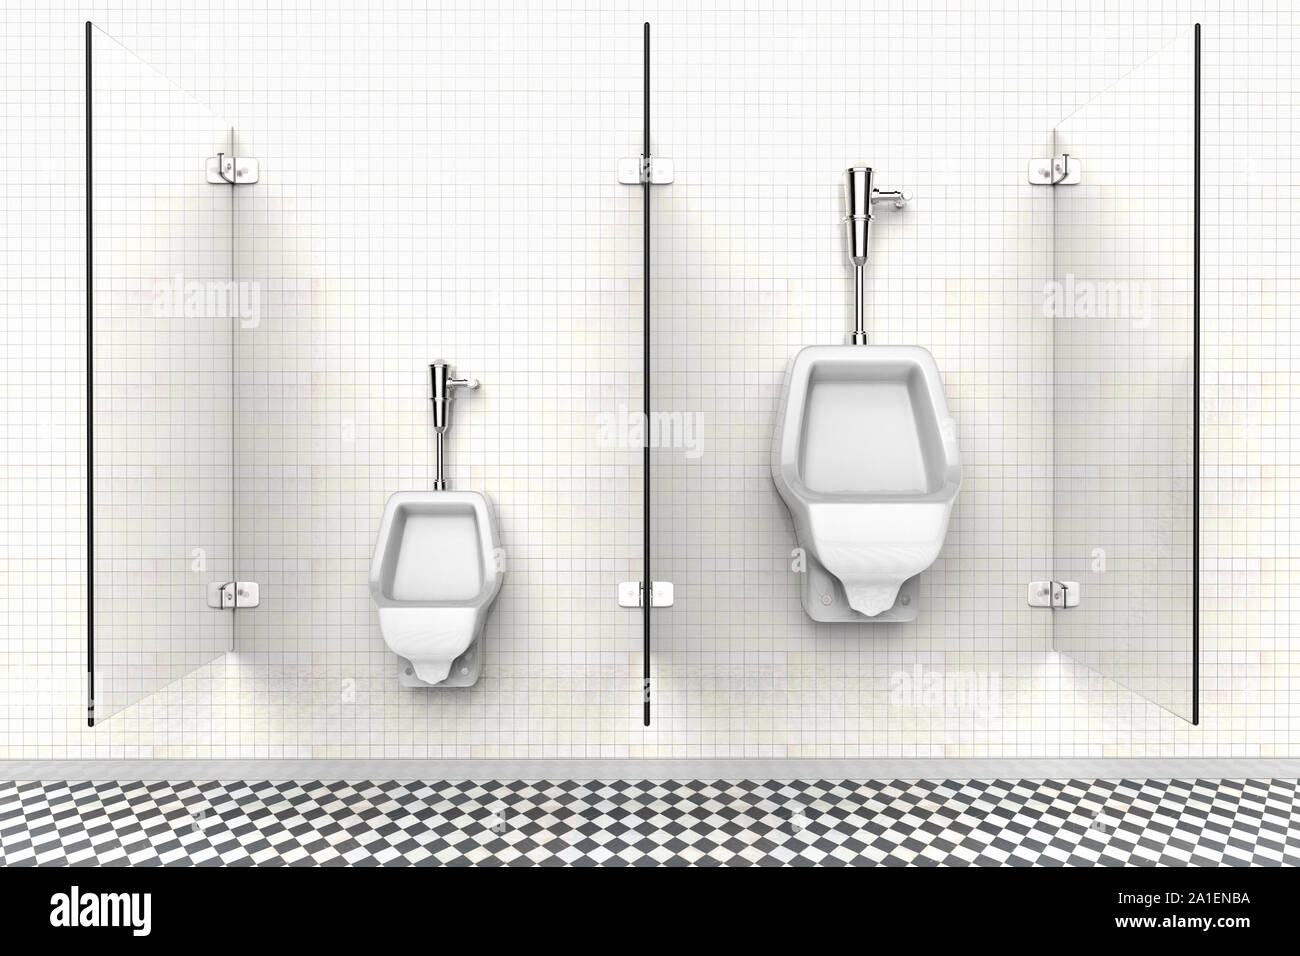 Le rendu 3D d'une salle de bains privative avec urinoirs pour enfant et adulte Banque D'Images